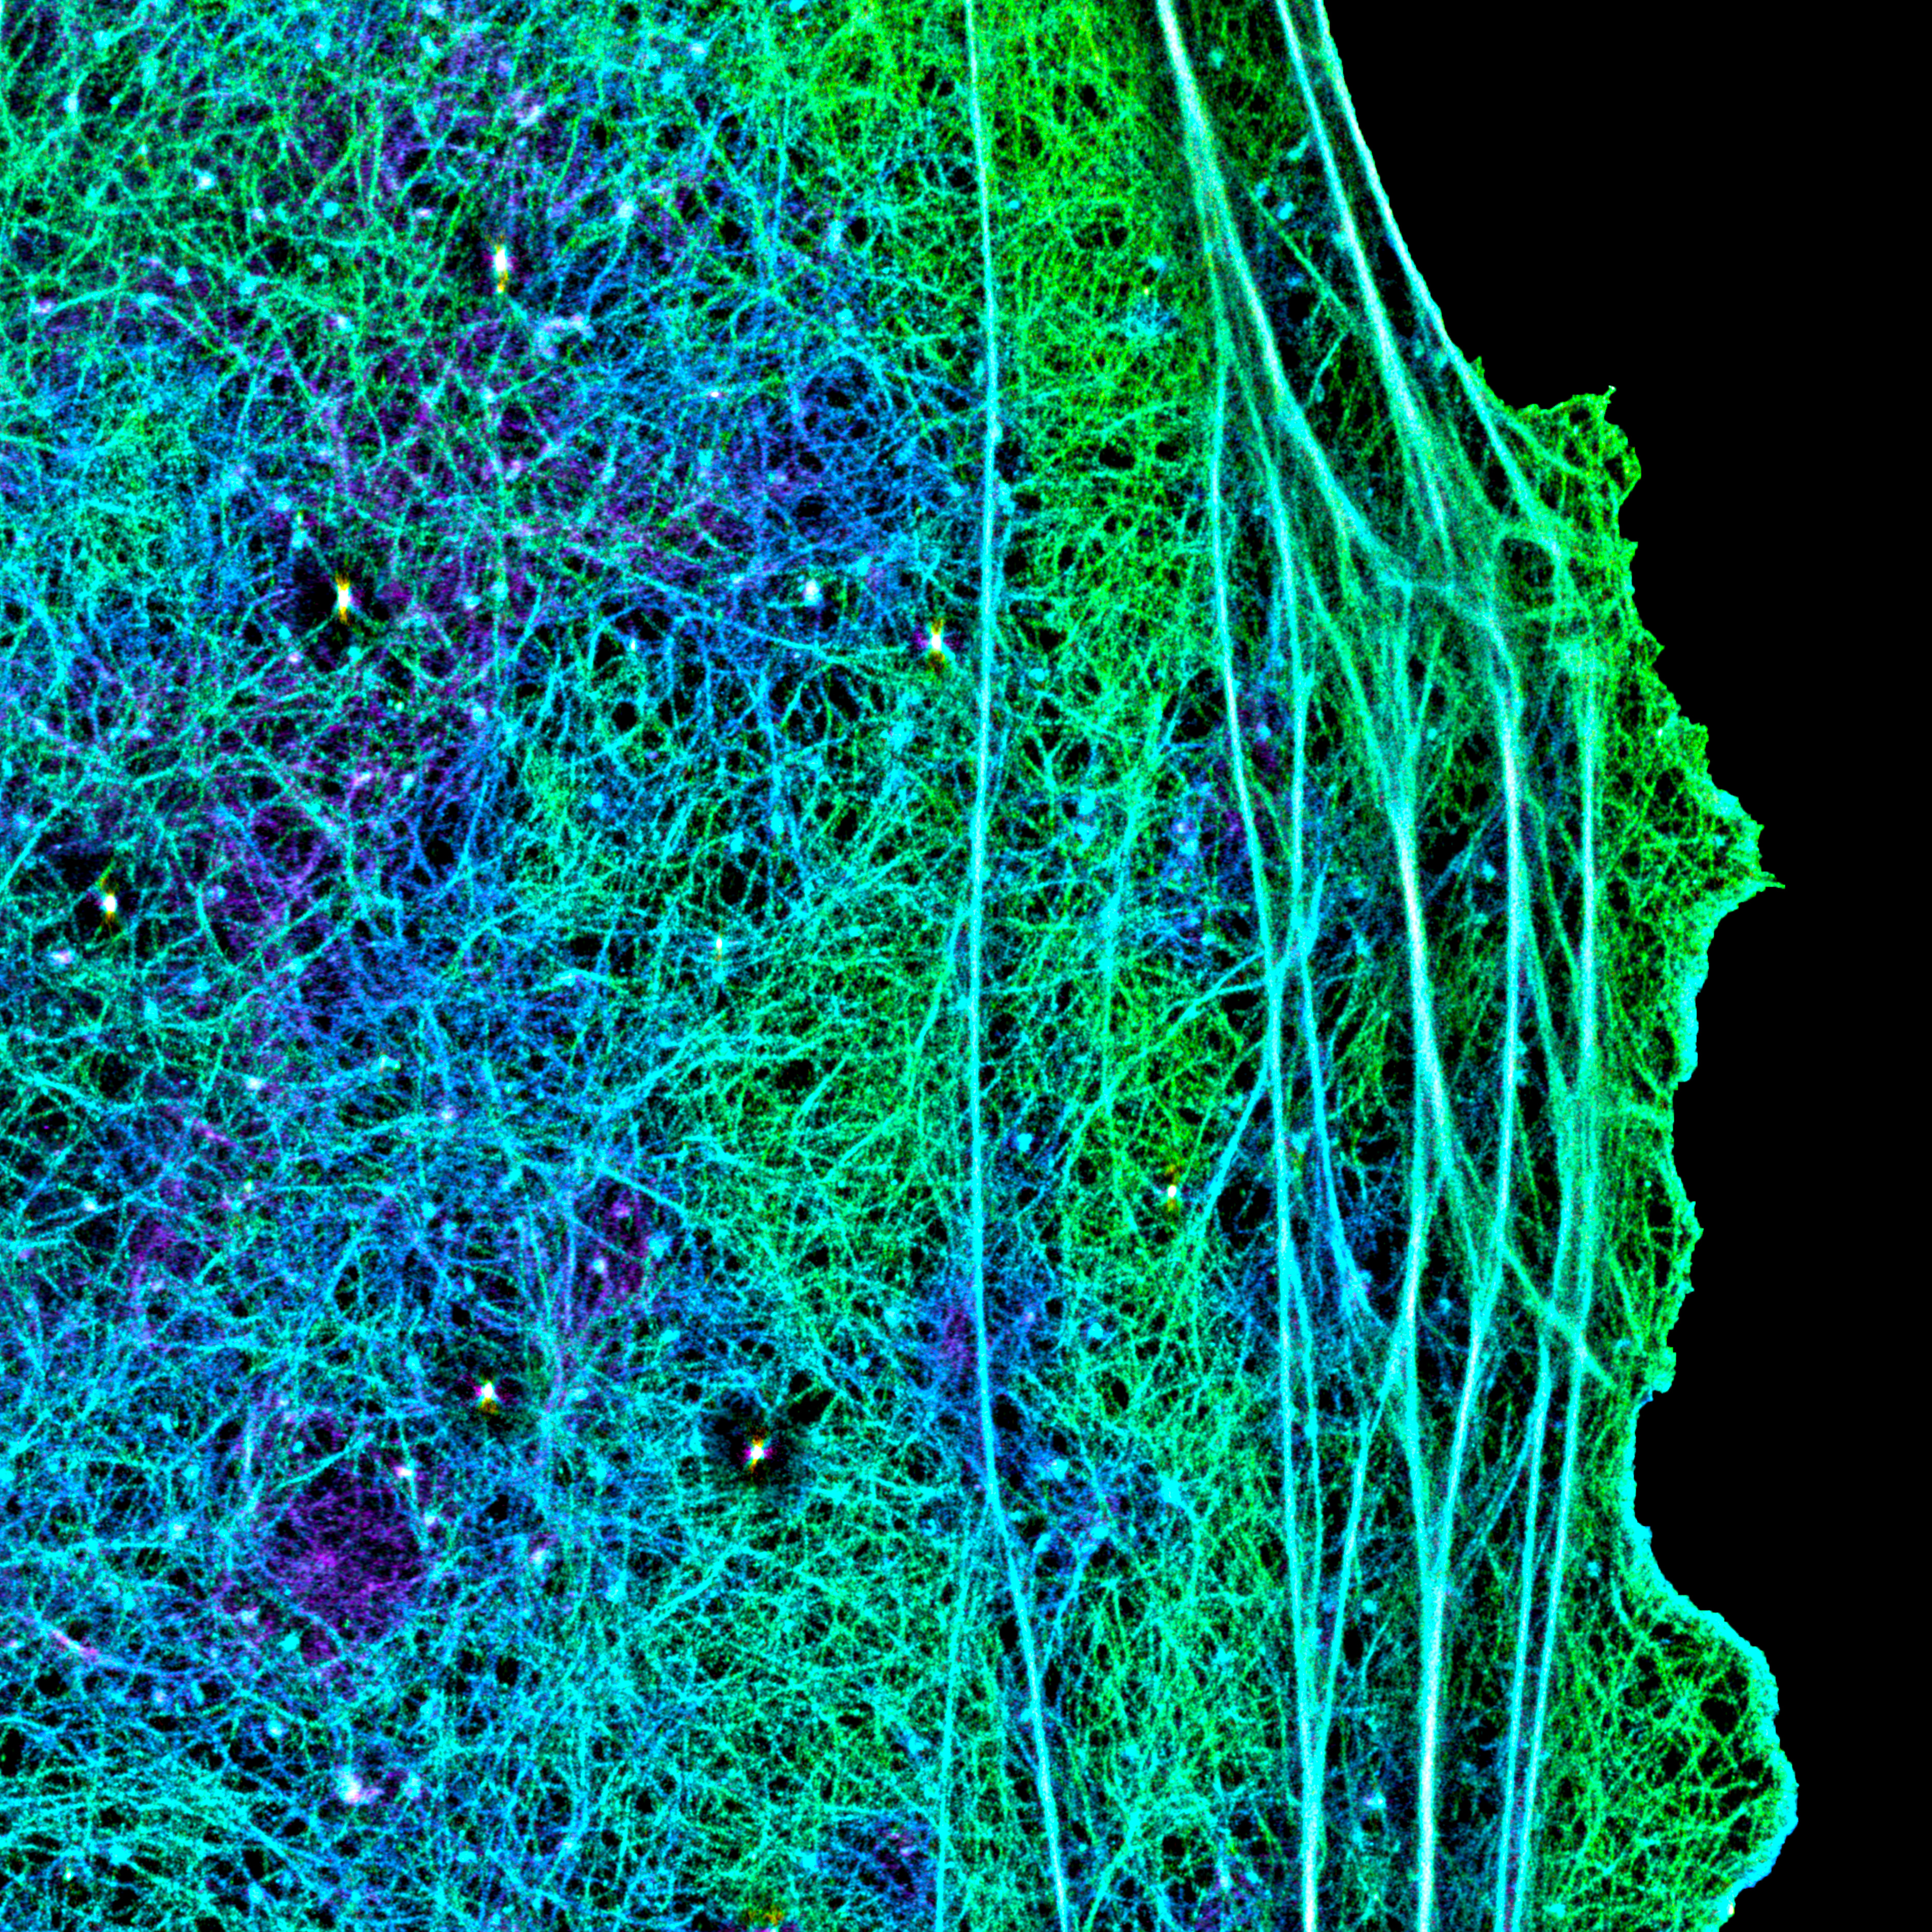 セルトリ細胞皮質下アクチン繊維ナノアーキテクチャーの超解像イメージング